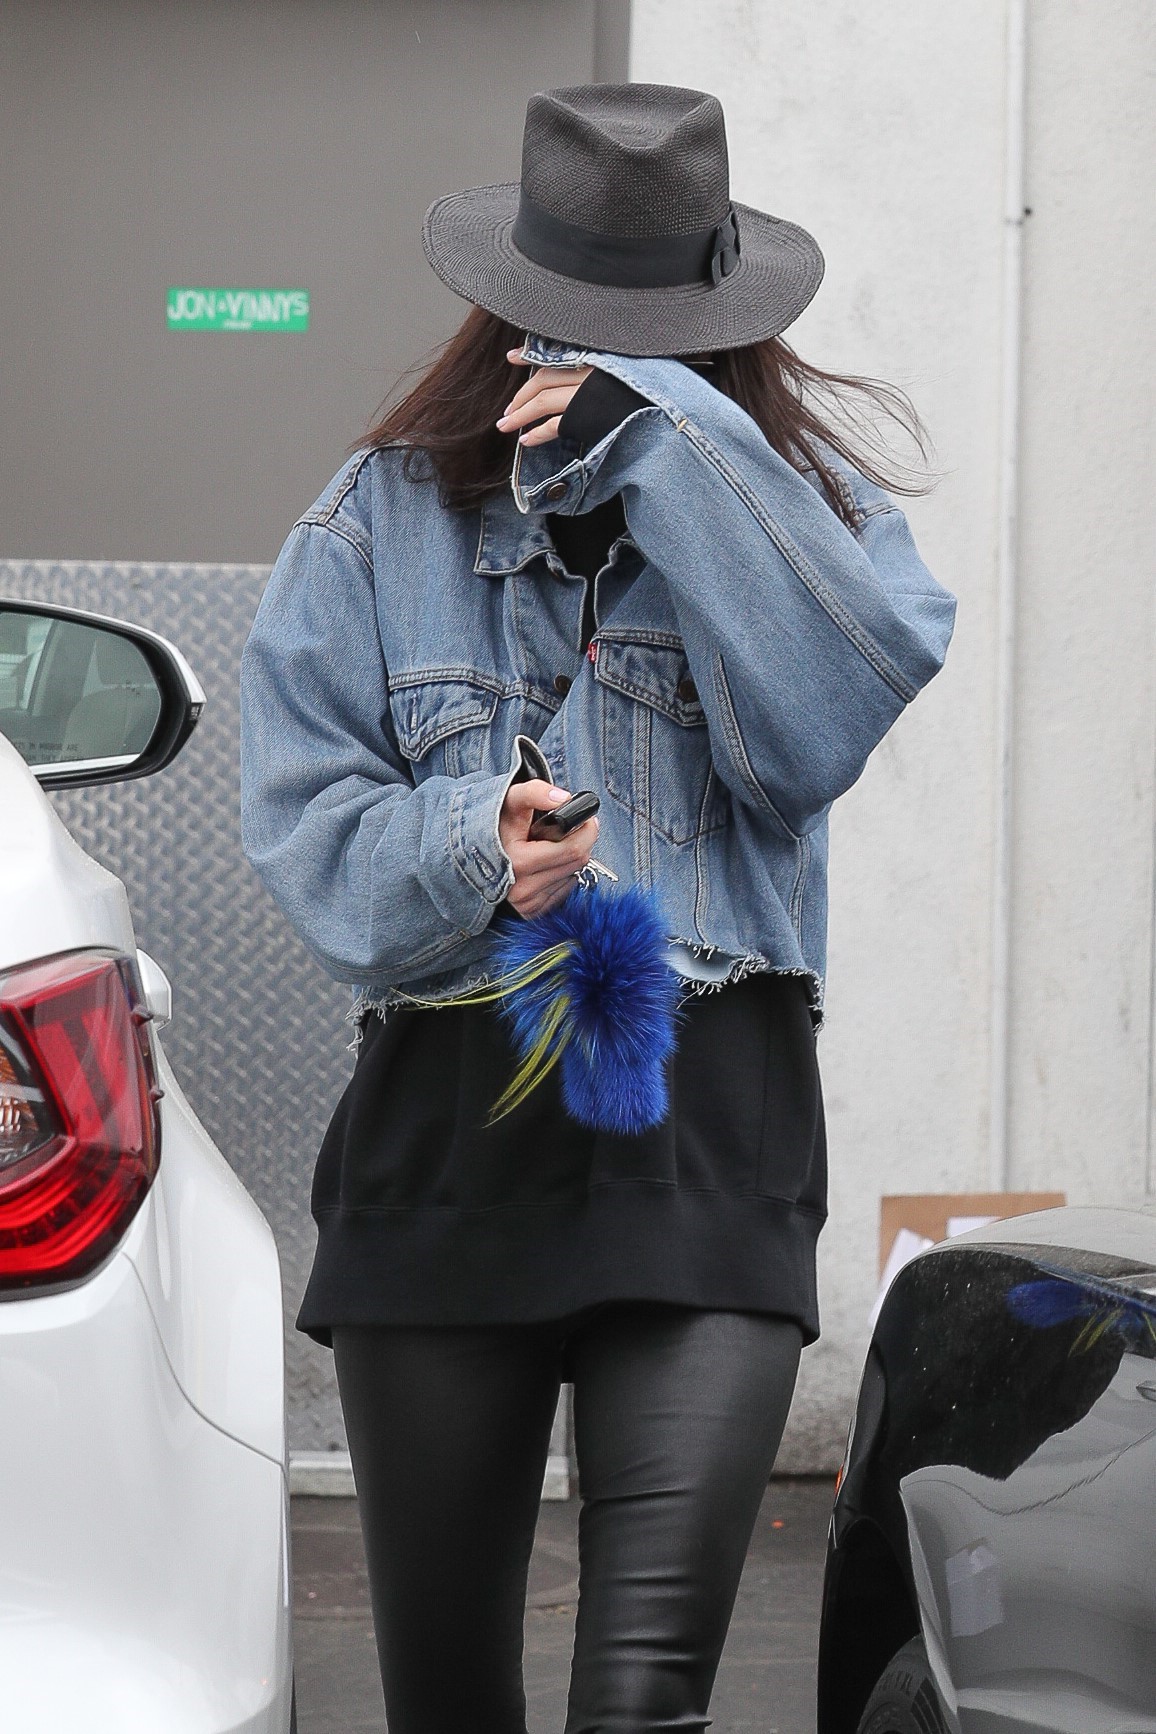 Kendall Jenner leaving a hair salon in LA